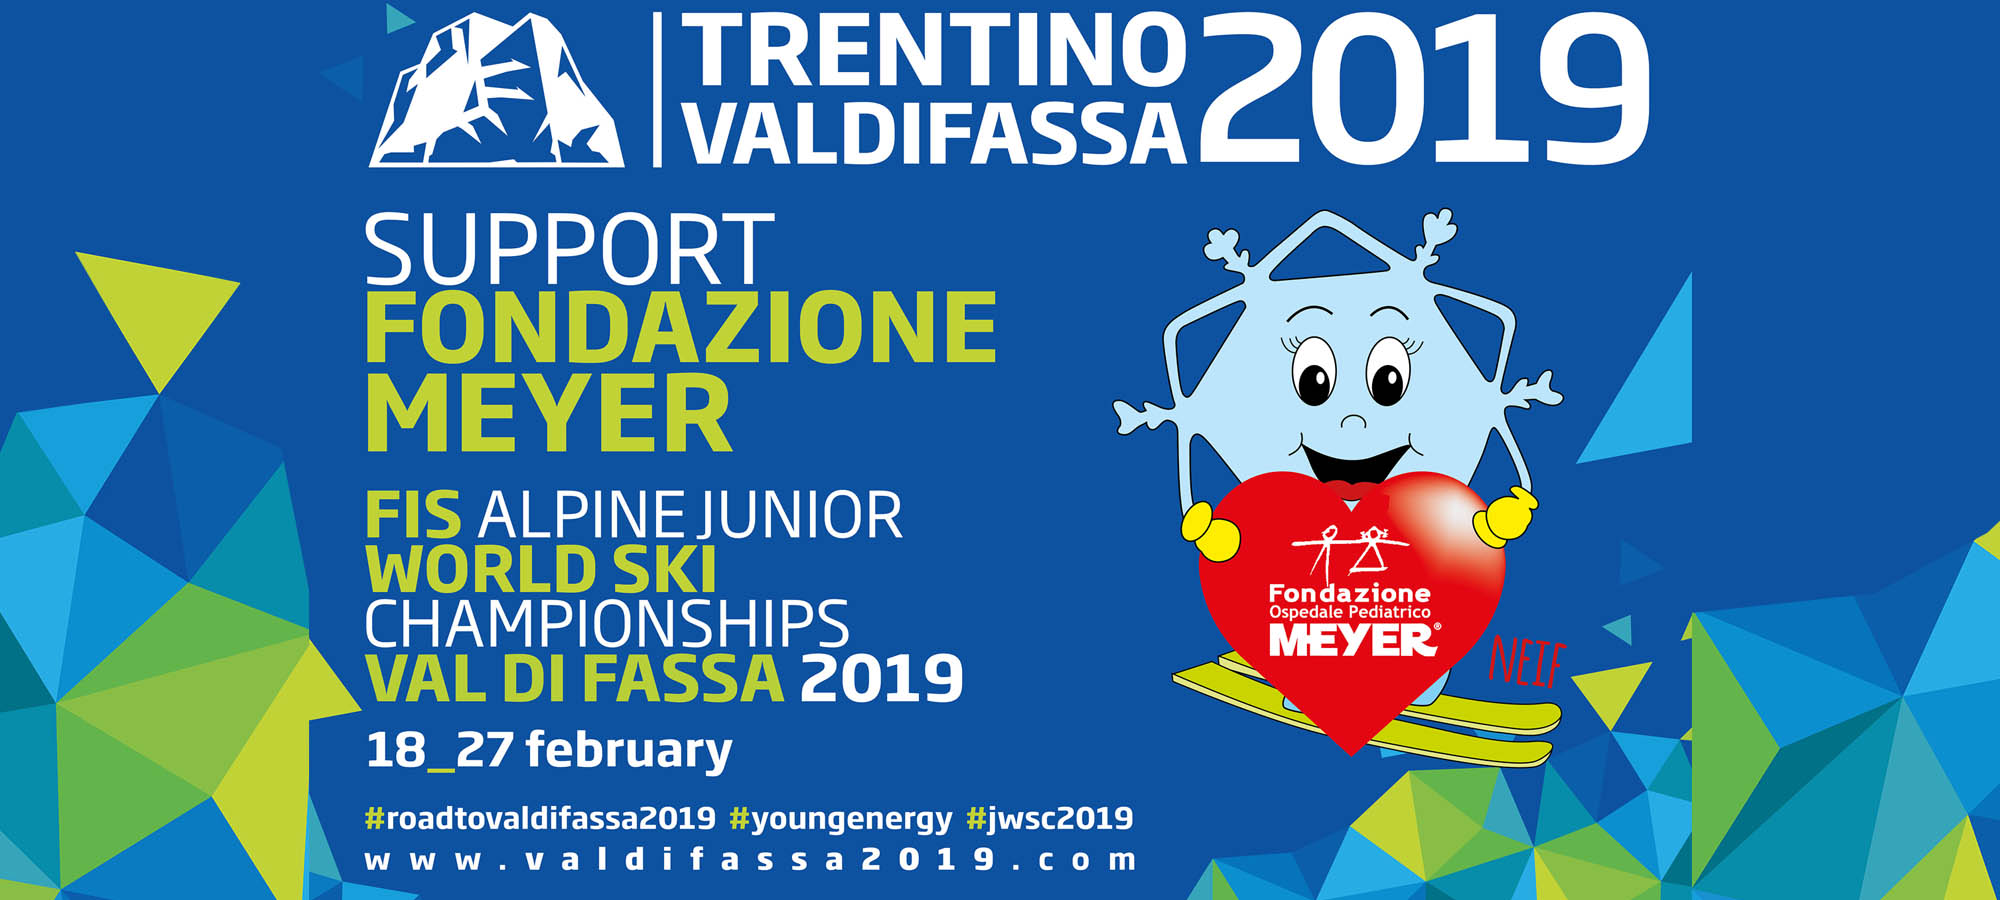 Campionati del Mondo Junior di Sci Alpino 2019